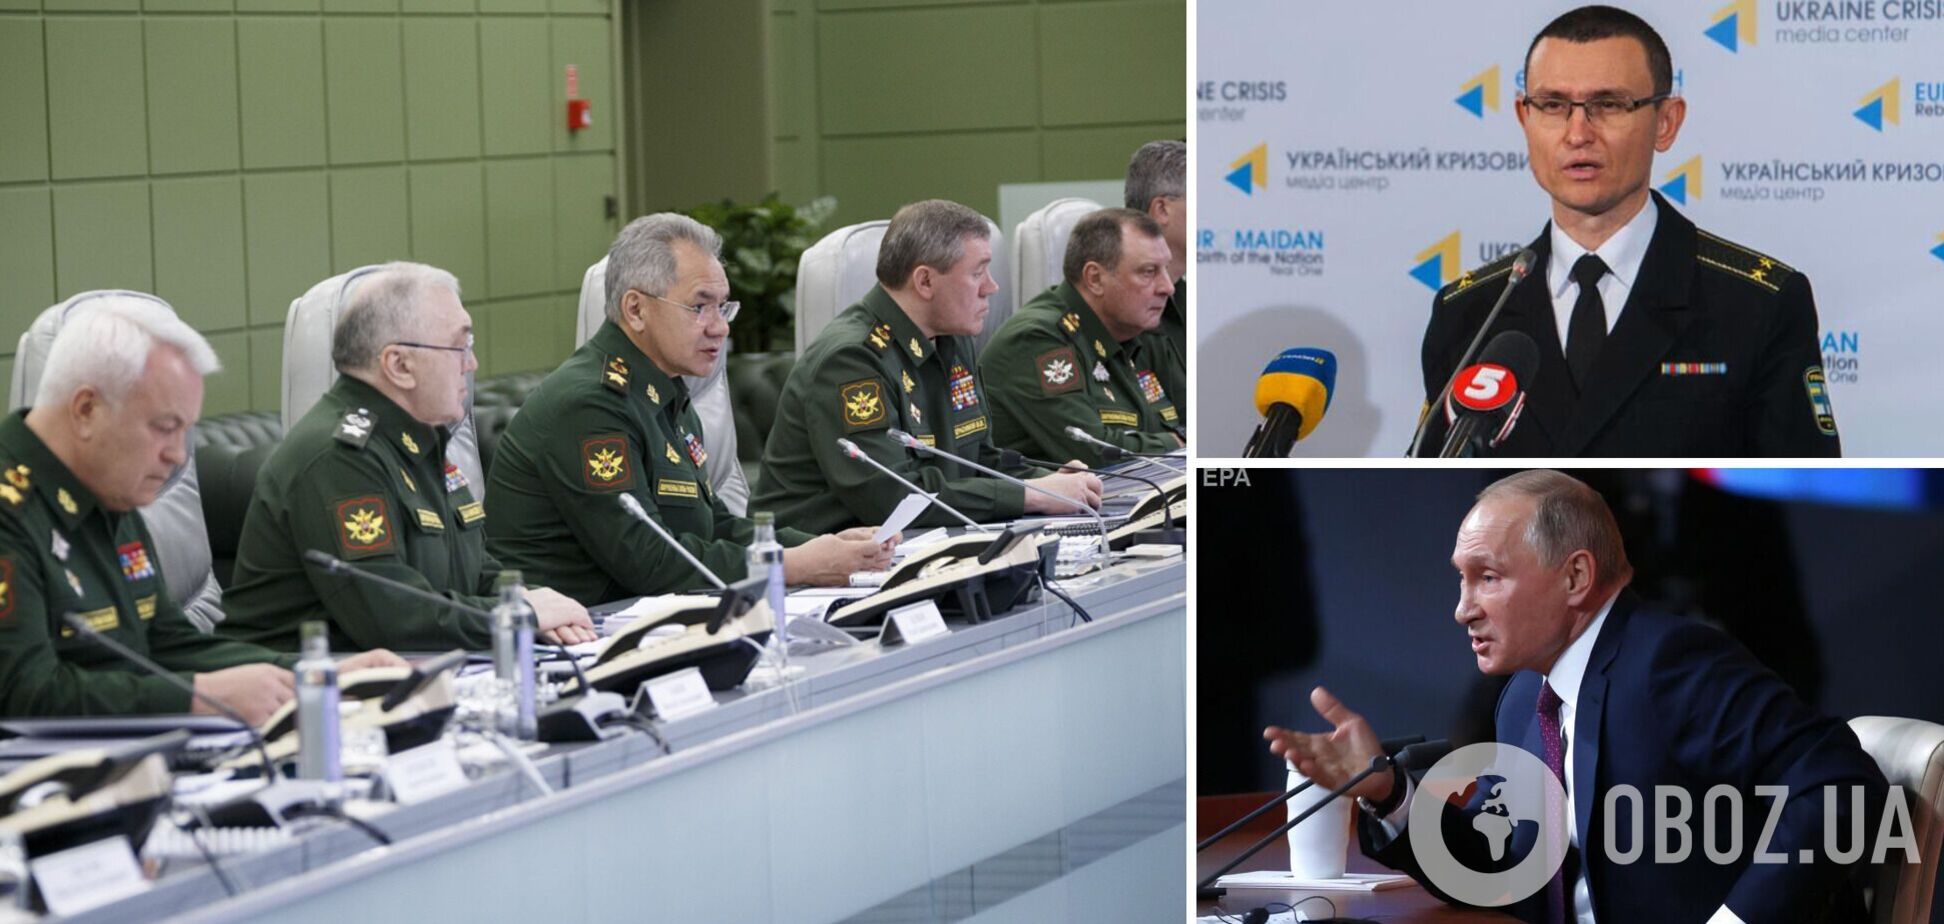 Селезнев: Путин зол на своих генералов, его ракеты на исходе, ВСУ готовят жесткий отпор. Интервью